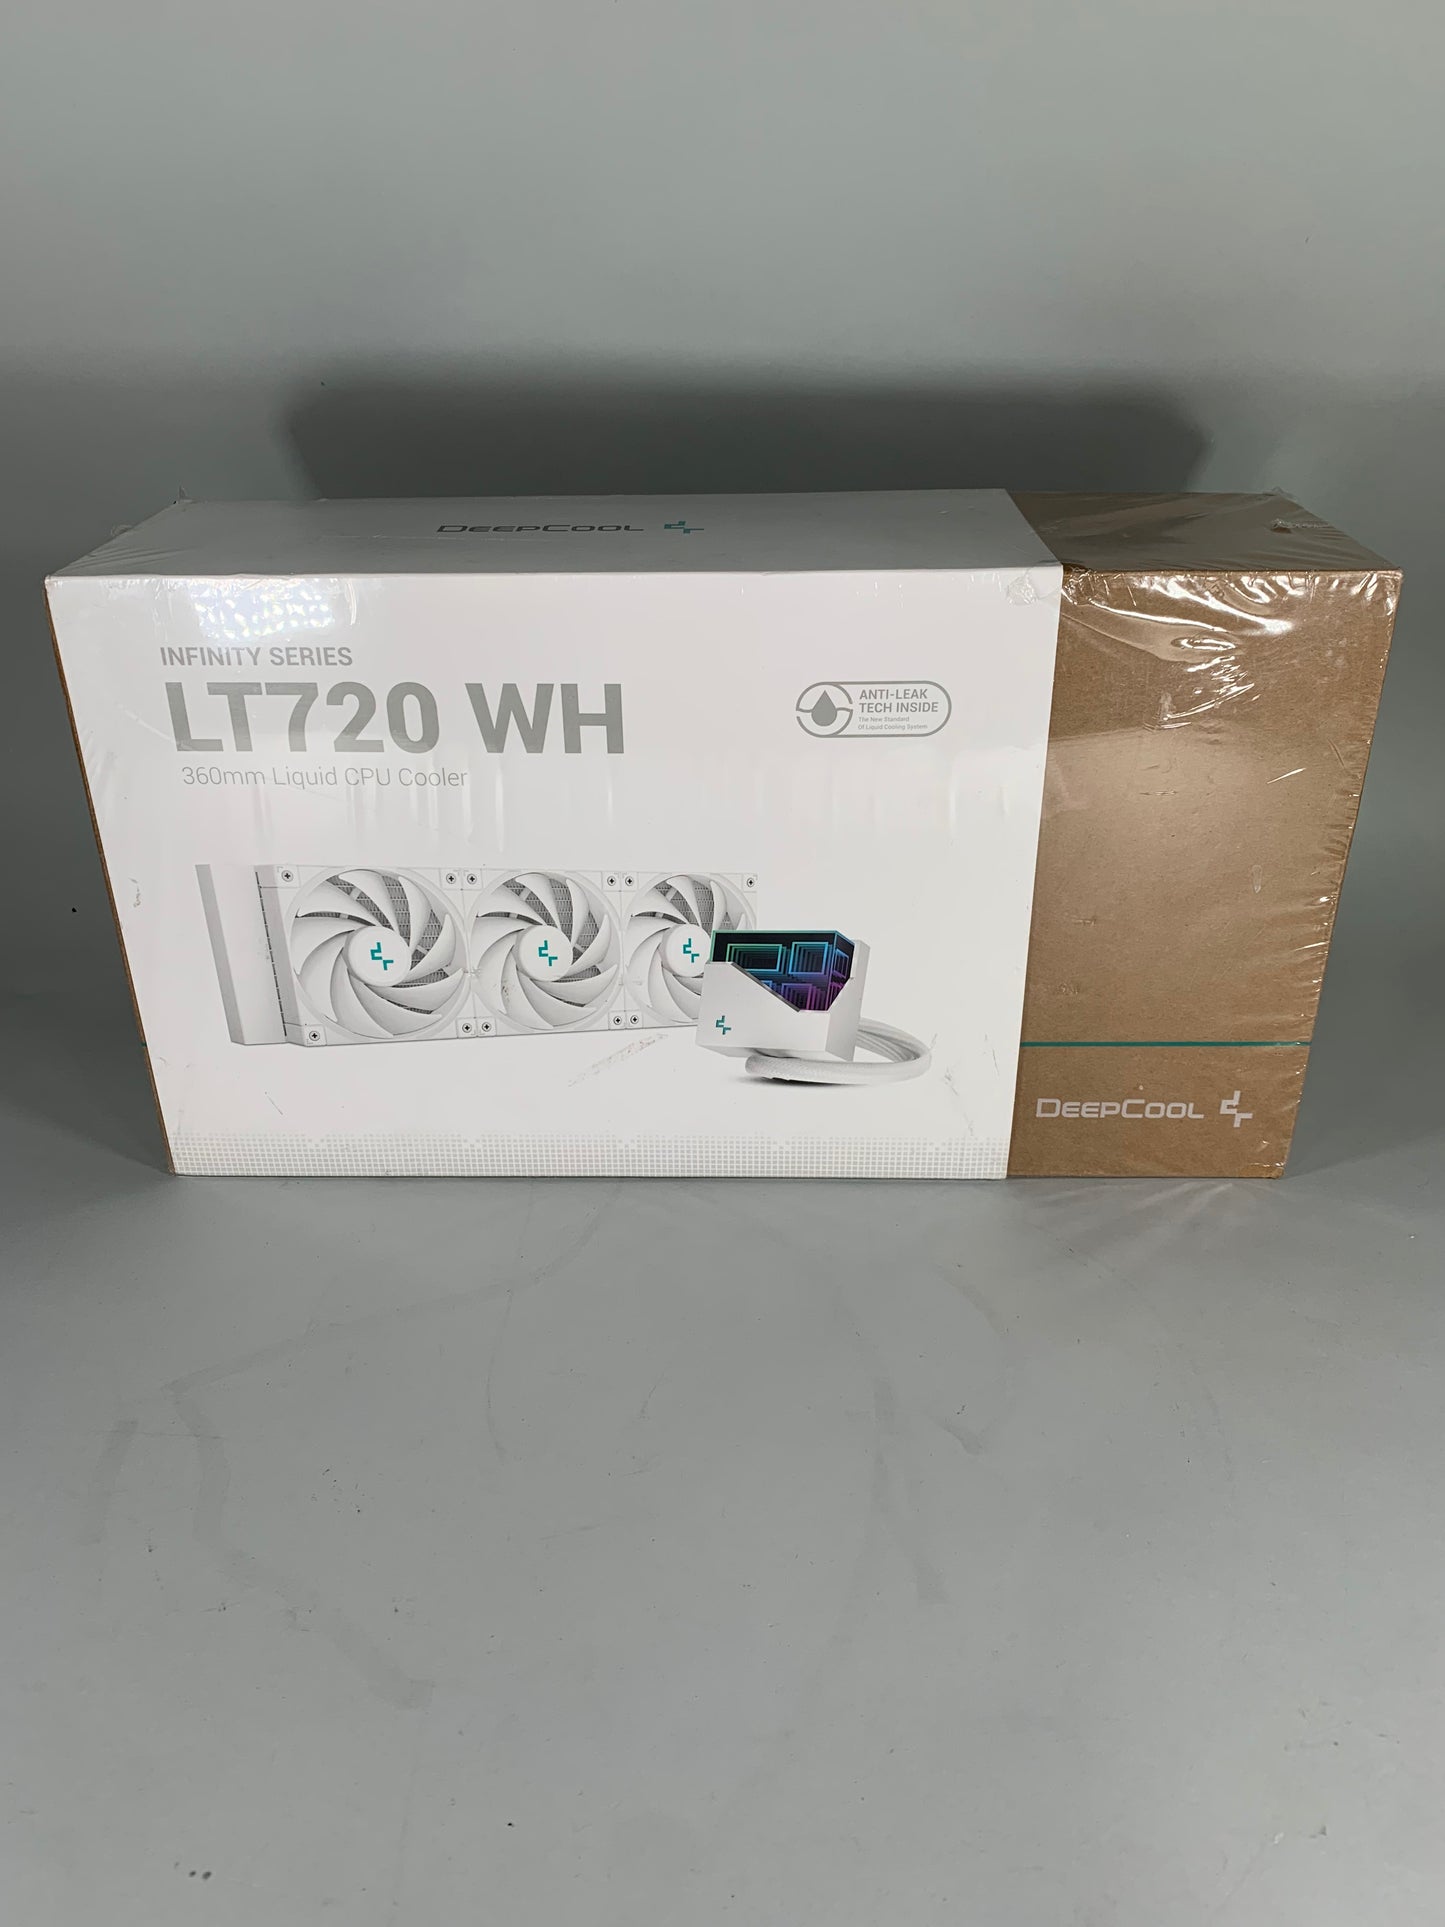 New Deepcool LT720 WH 360mm Liquid CPU Cooler